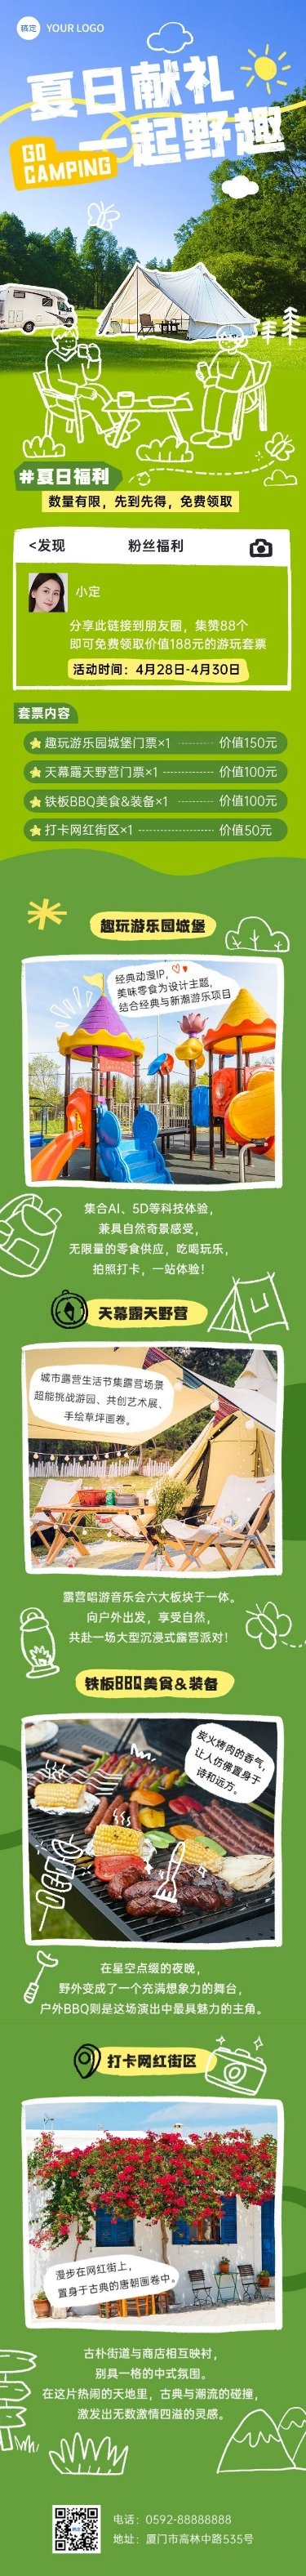 拙气风夏季旅游宣传微信公众号文章长图